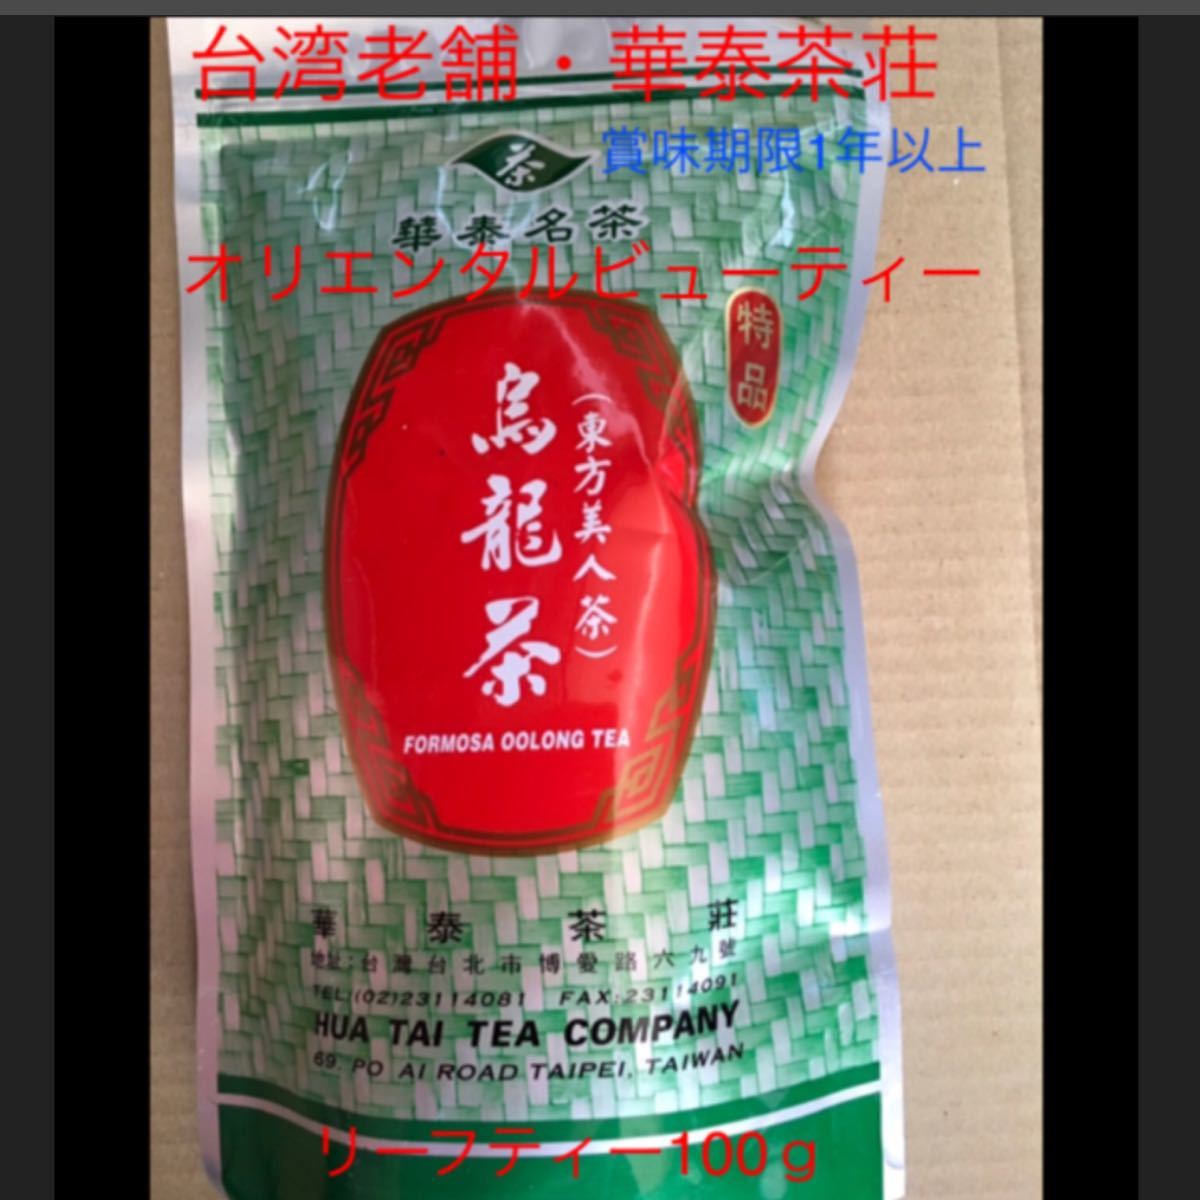 お買得価格！台湾老舗の華泰茶荘「台湾人気茶ティーバッグ4種類の飲み比べセット」！いろいろ気分によってお茶を選べます！